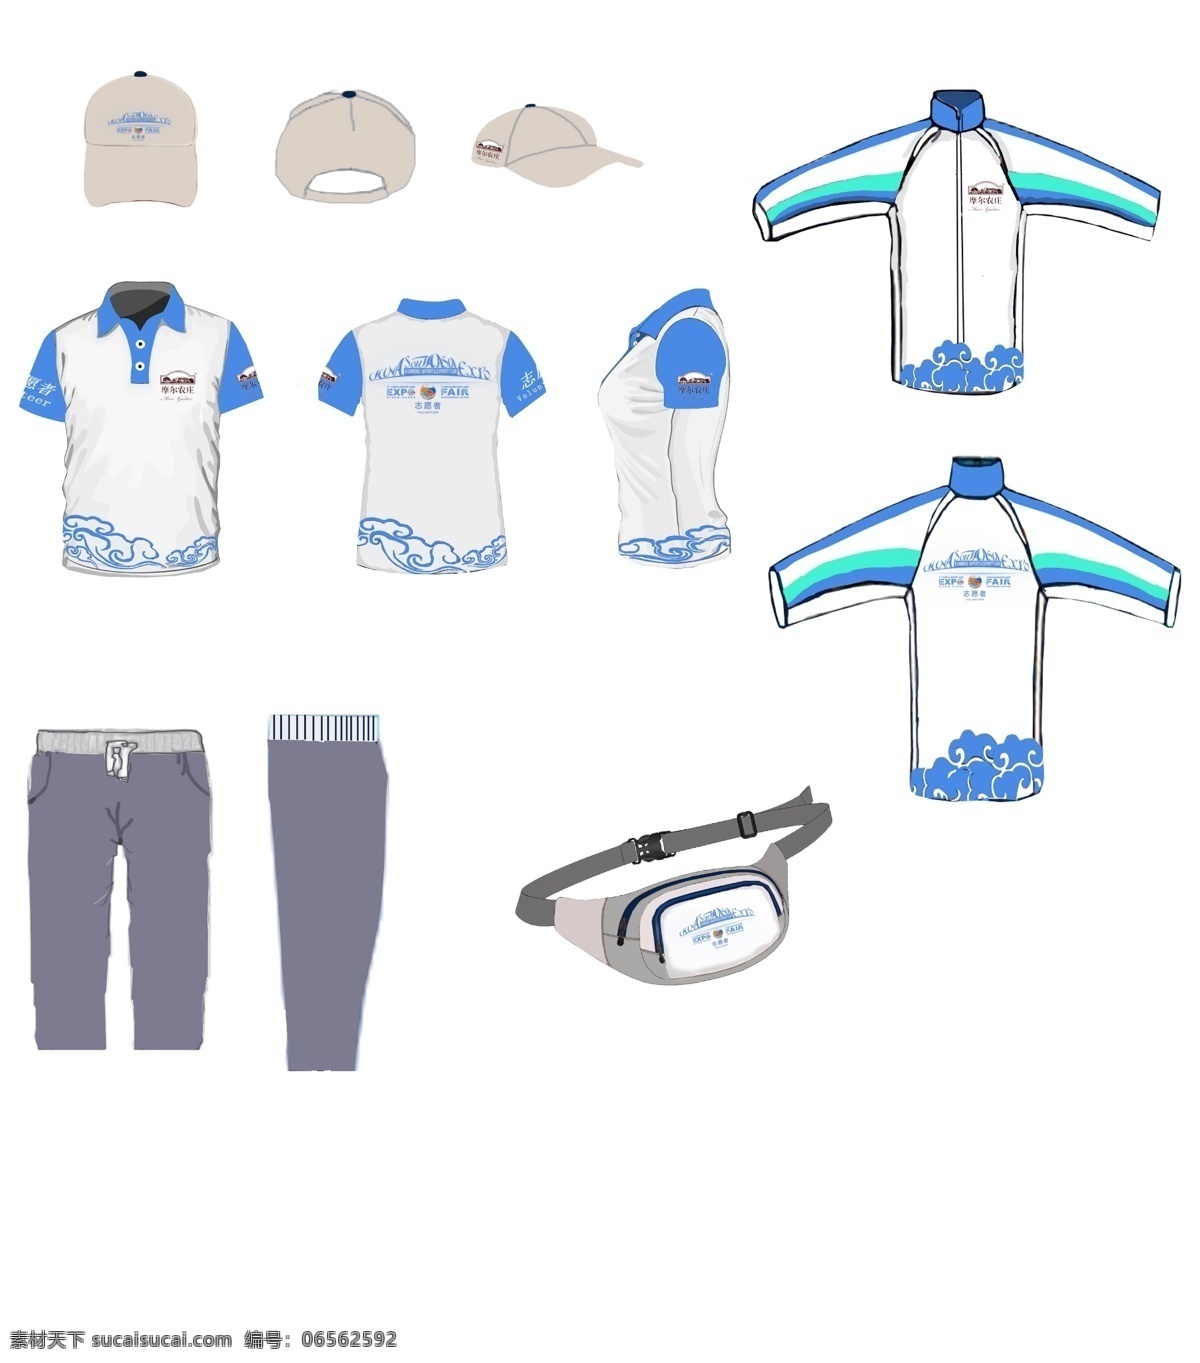 第三届 南博 会 志愿者 服装 原创 命 名为 云之南 采用 蓝白 相间 显得清新明朗 整套 包括 帽 字 子 t恤 外套 裤子 腰包 白色